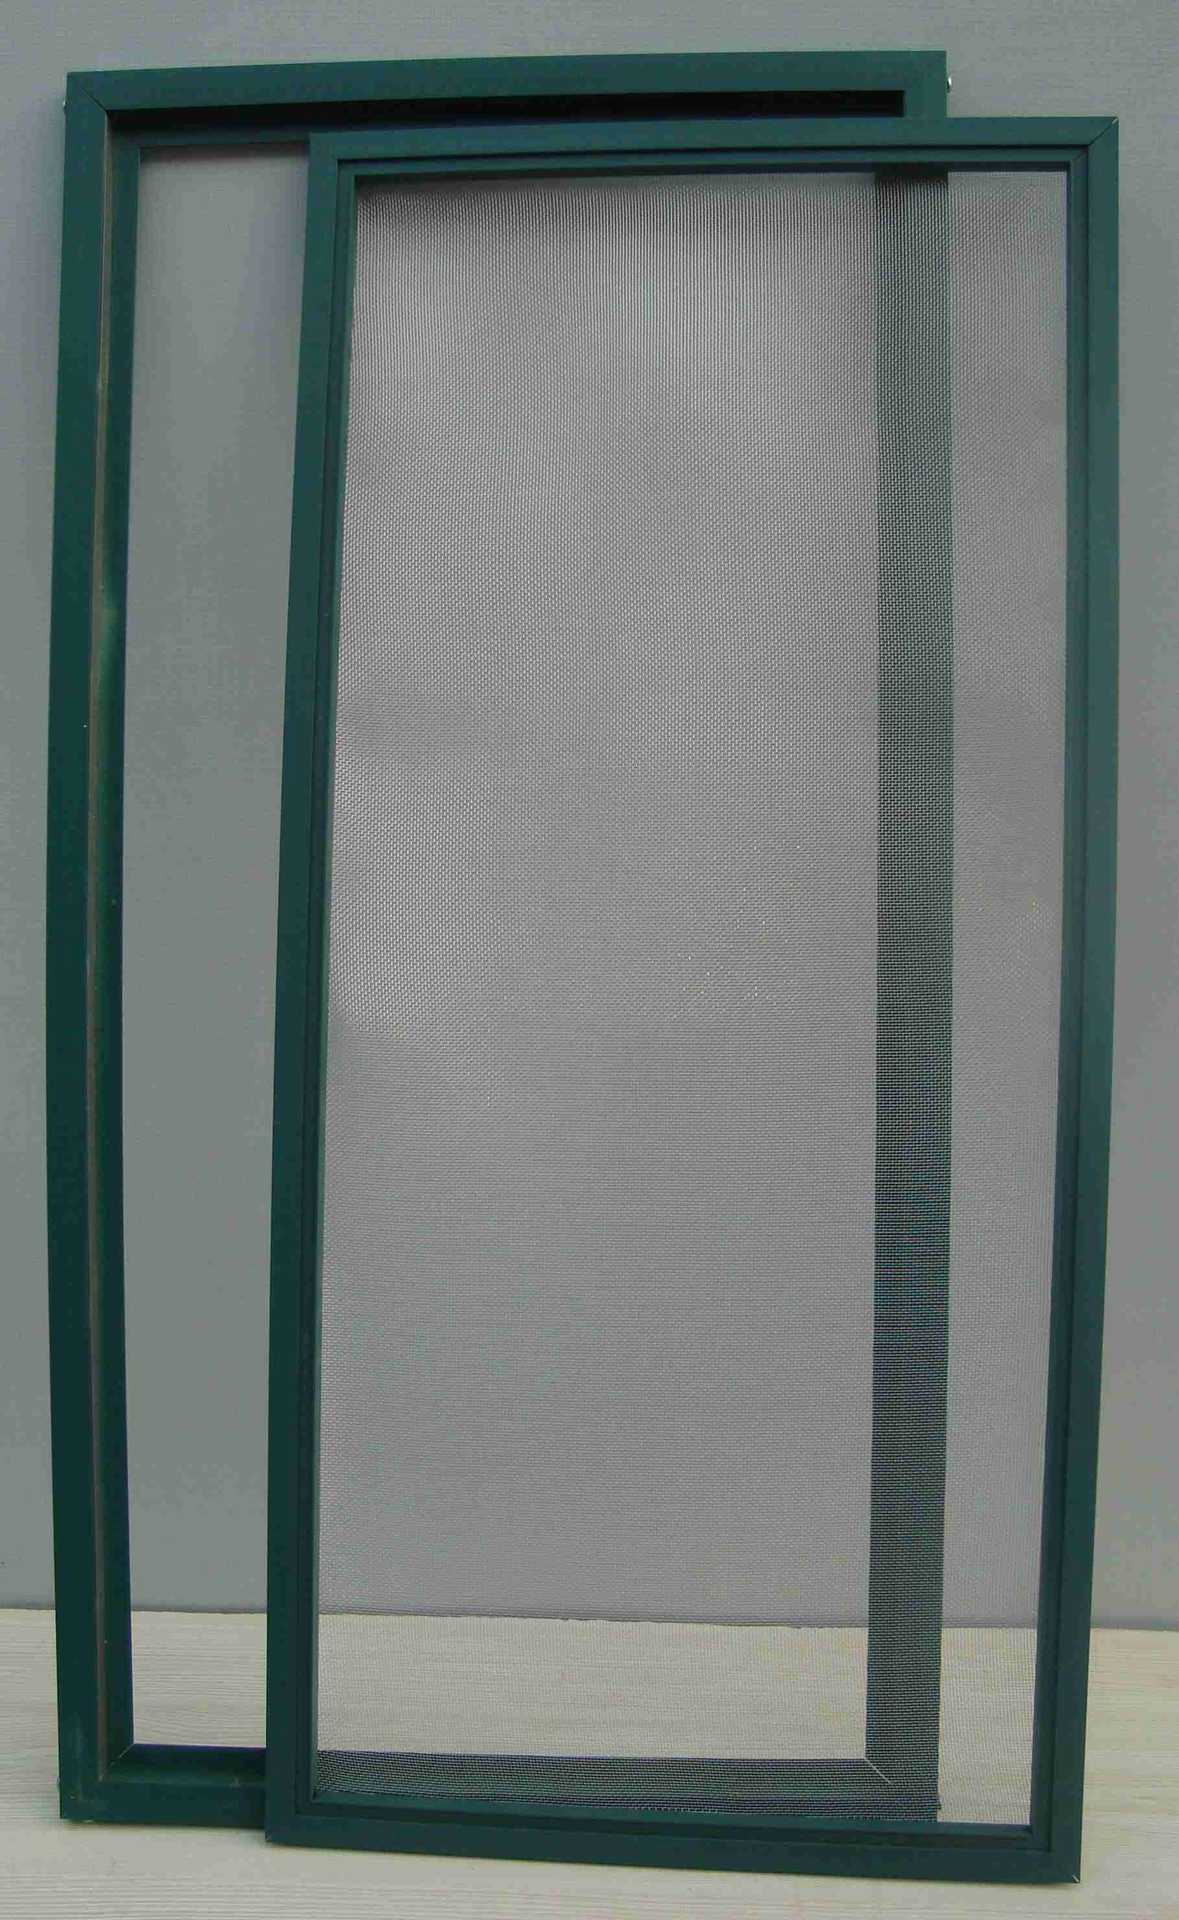 2015新款扇中扇可拆卸玻璃丝纤维网防蚊纱窗厂家低价批发